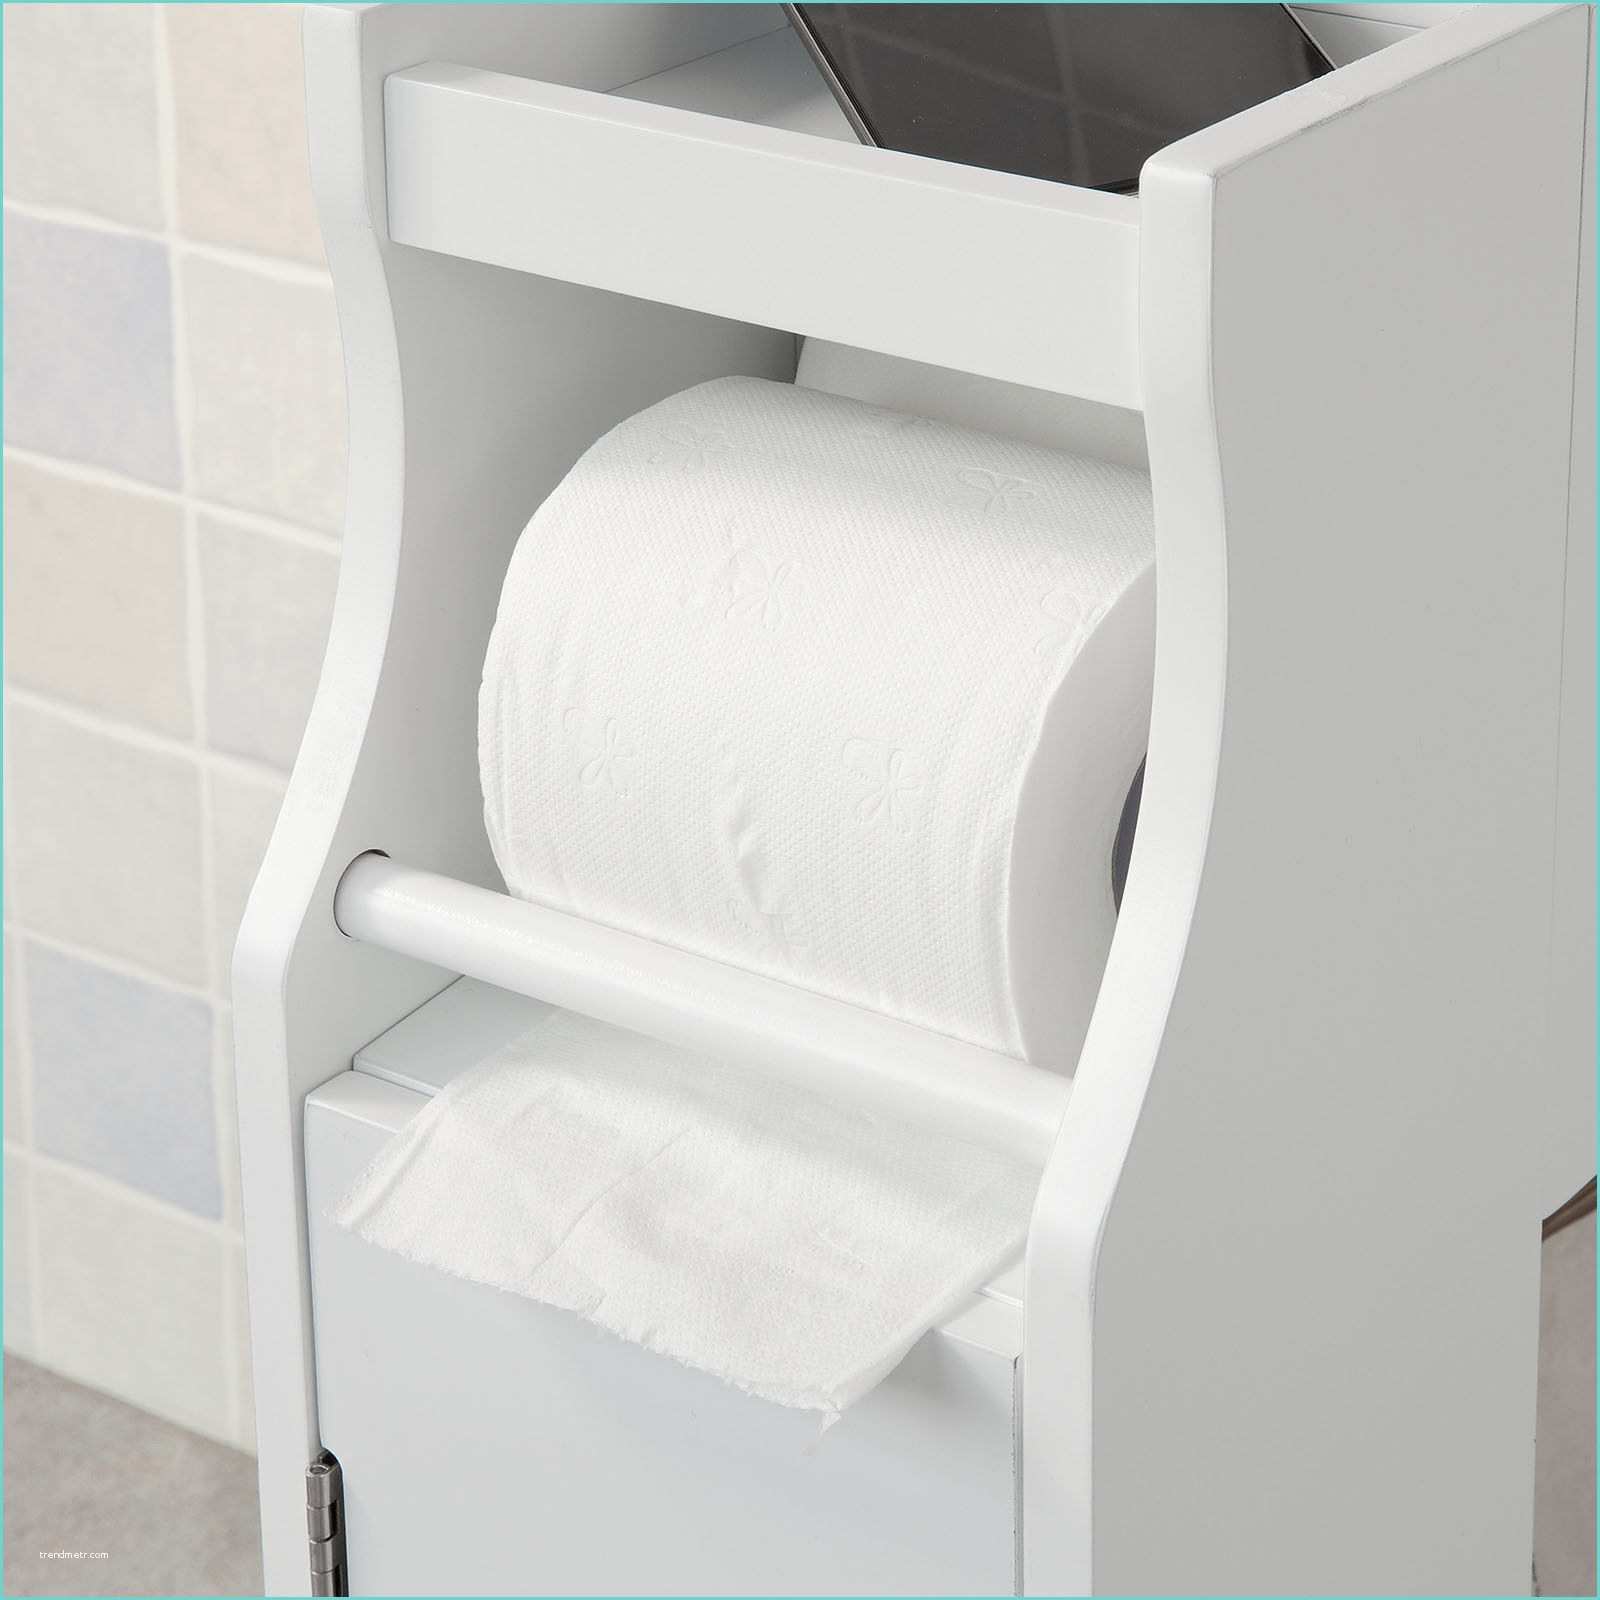 Ide Rangement Papier toilette Armoire Papier toilette – Obasinc